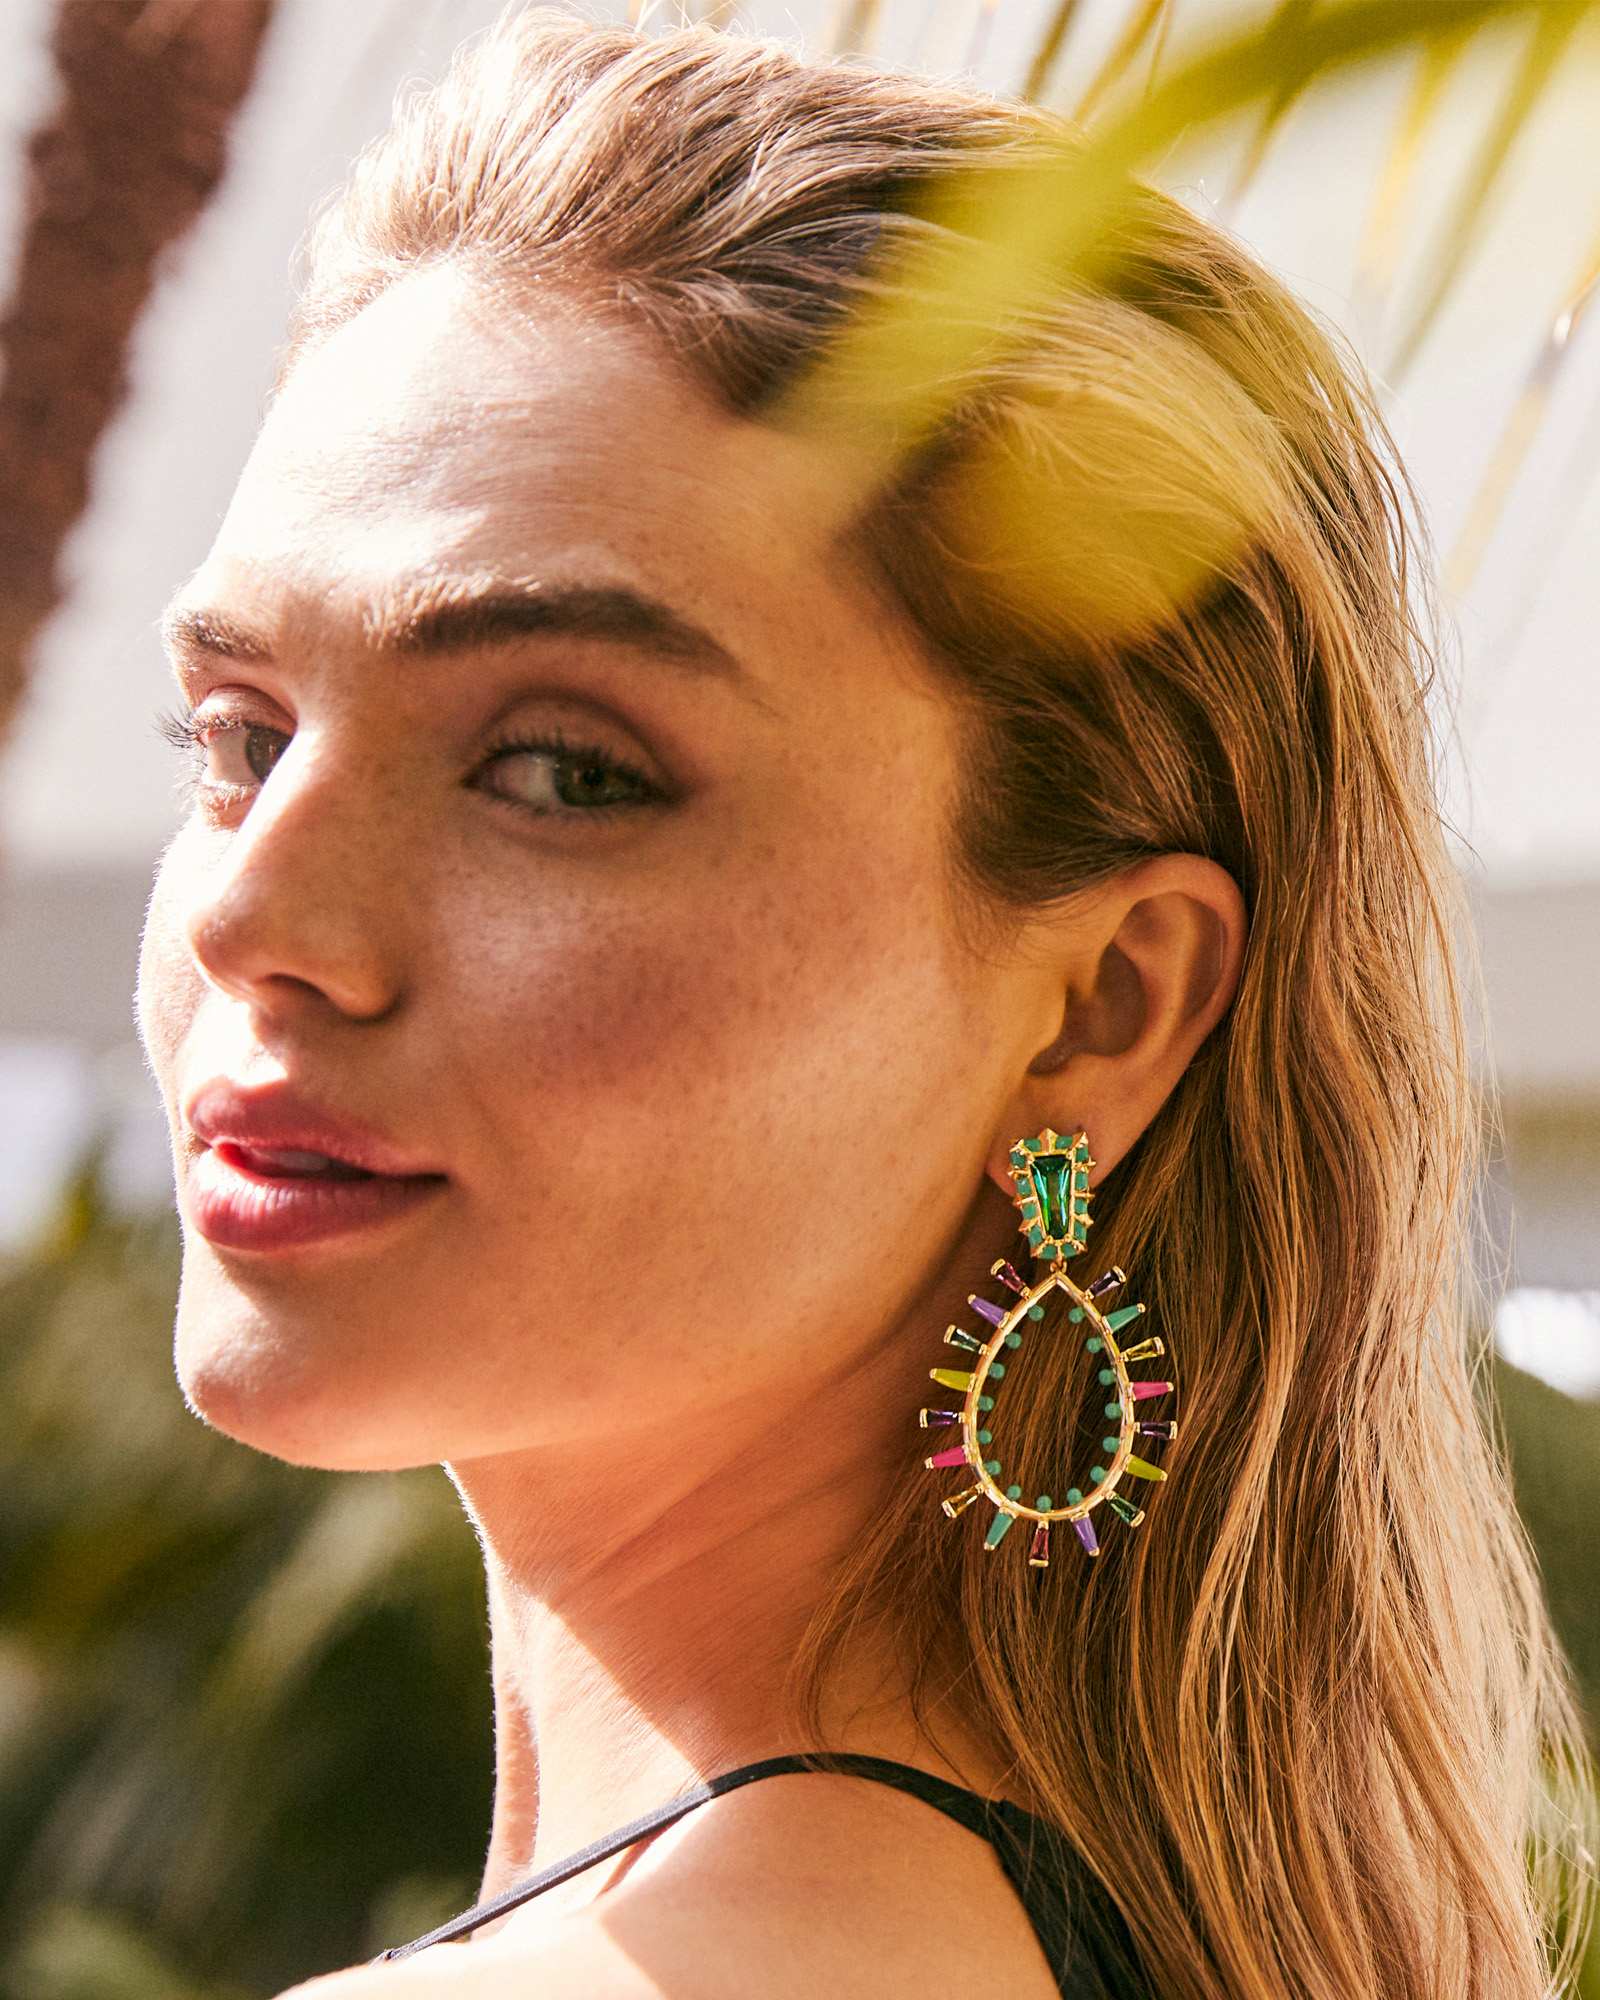 Kelsey Gold Statement Earrings in Multi Mix